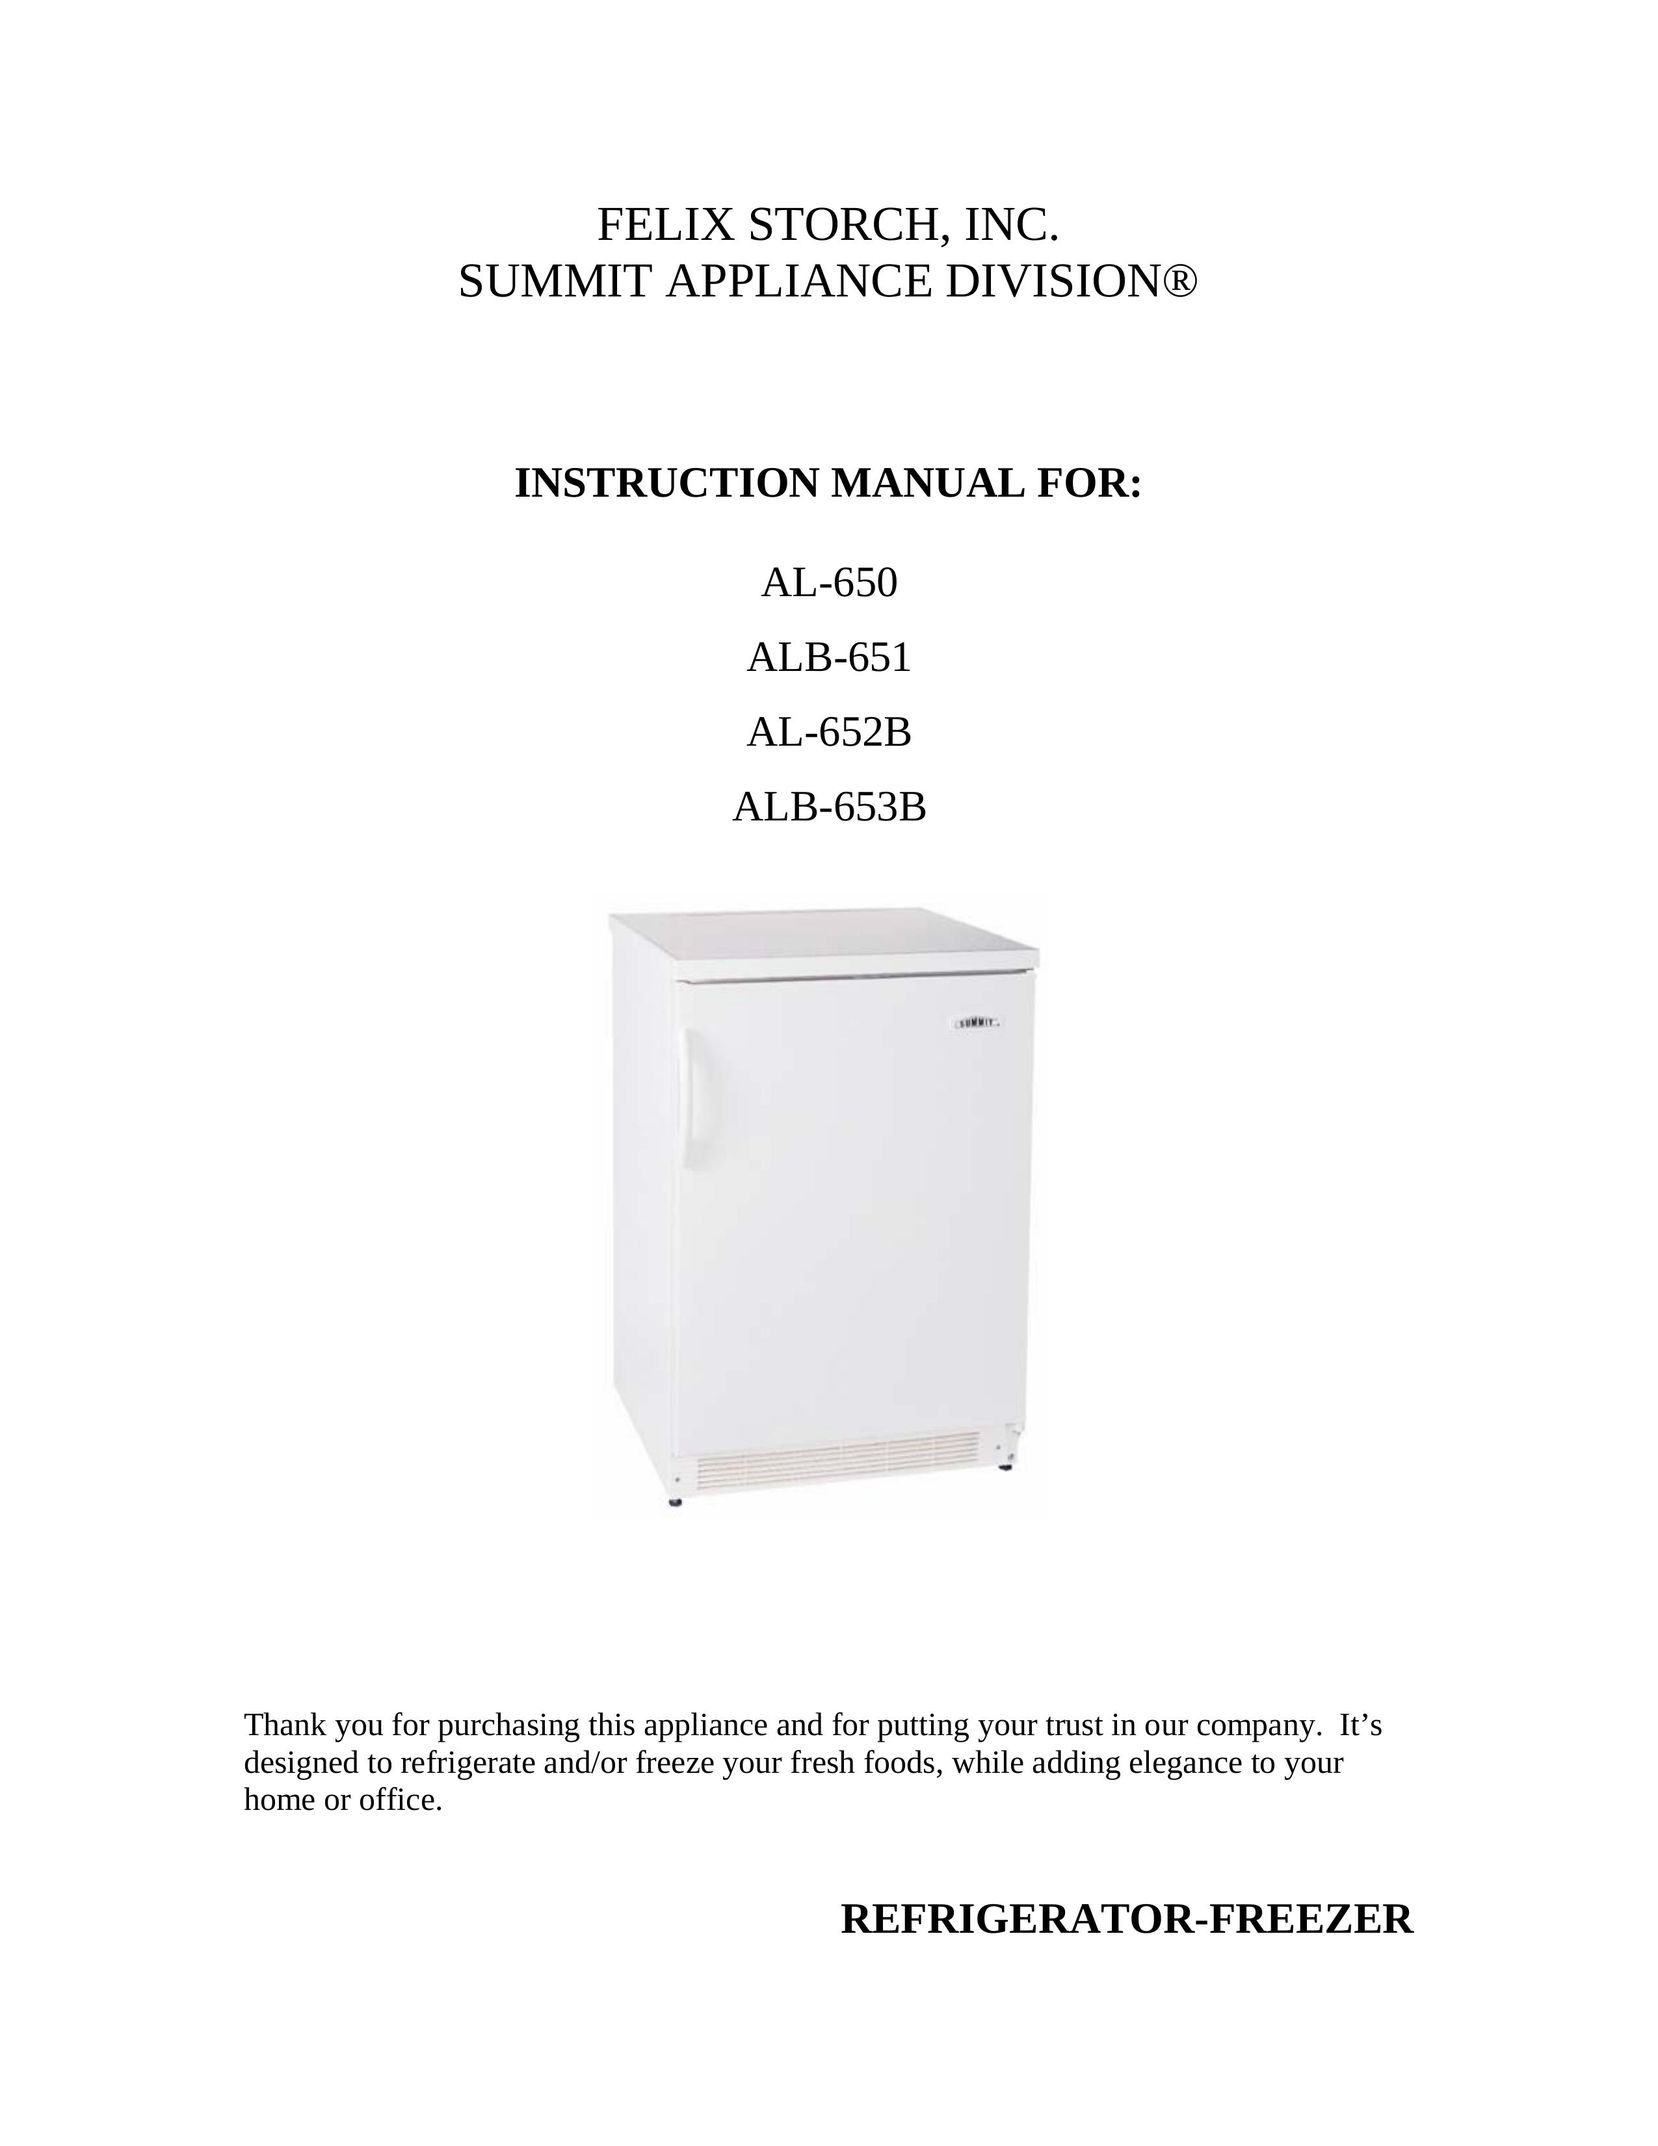 Summit AL-650 Freezer User Manual